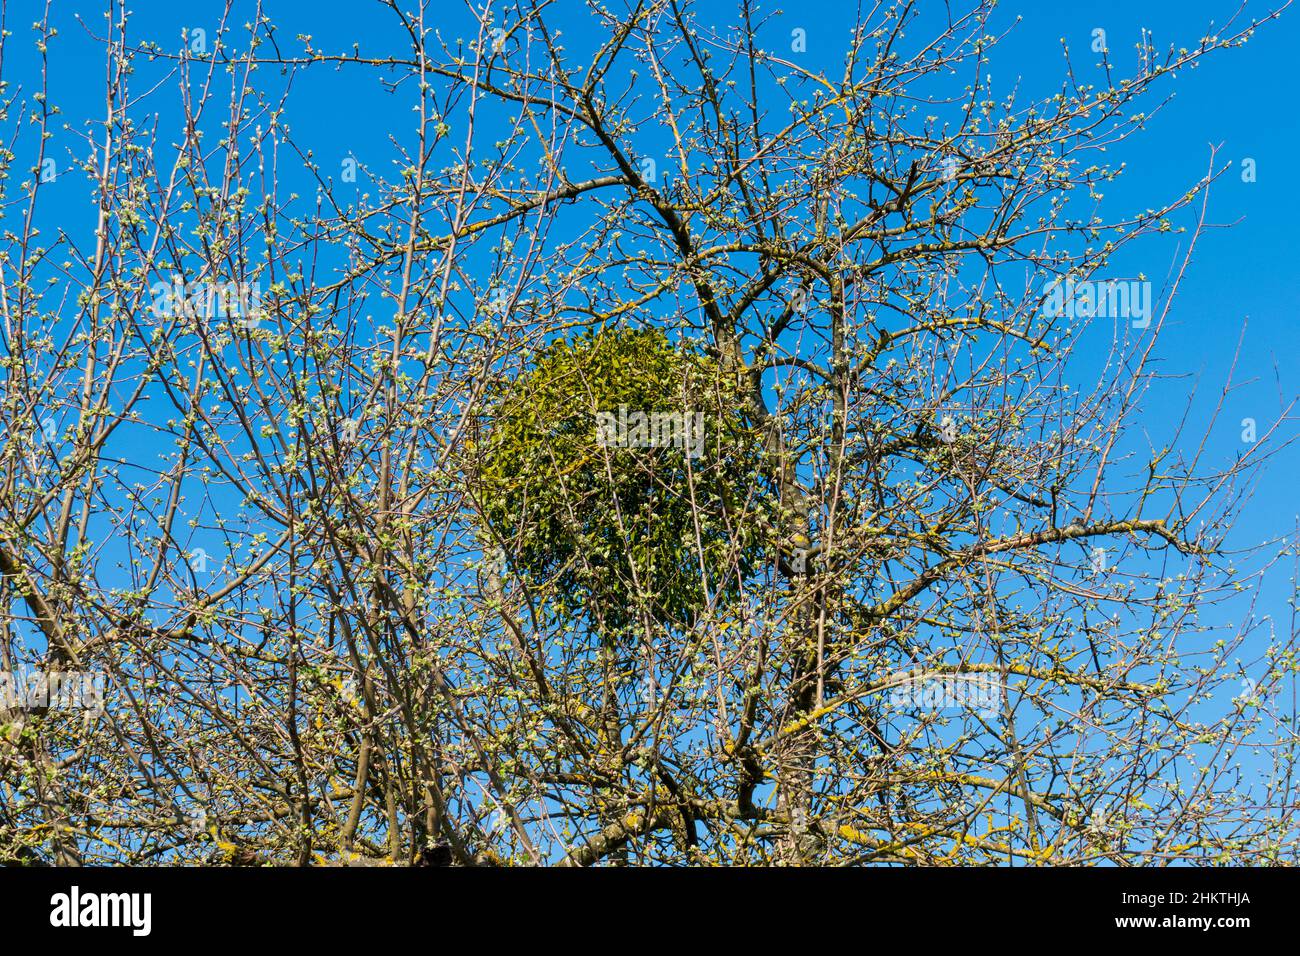 Mistel wächst in forma einer Kugel un einem alten Obstbaum Foto Stock